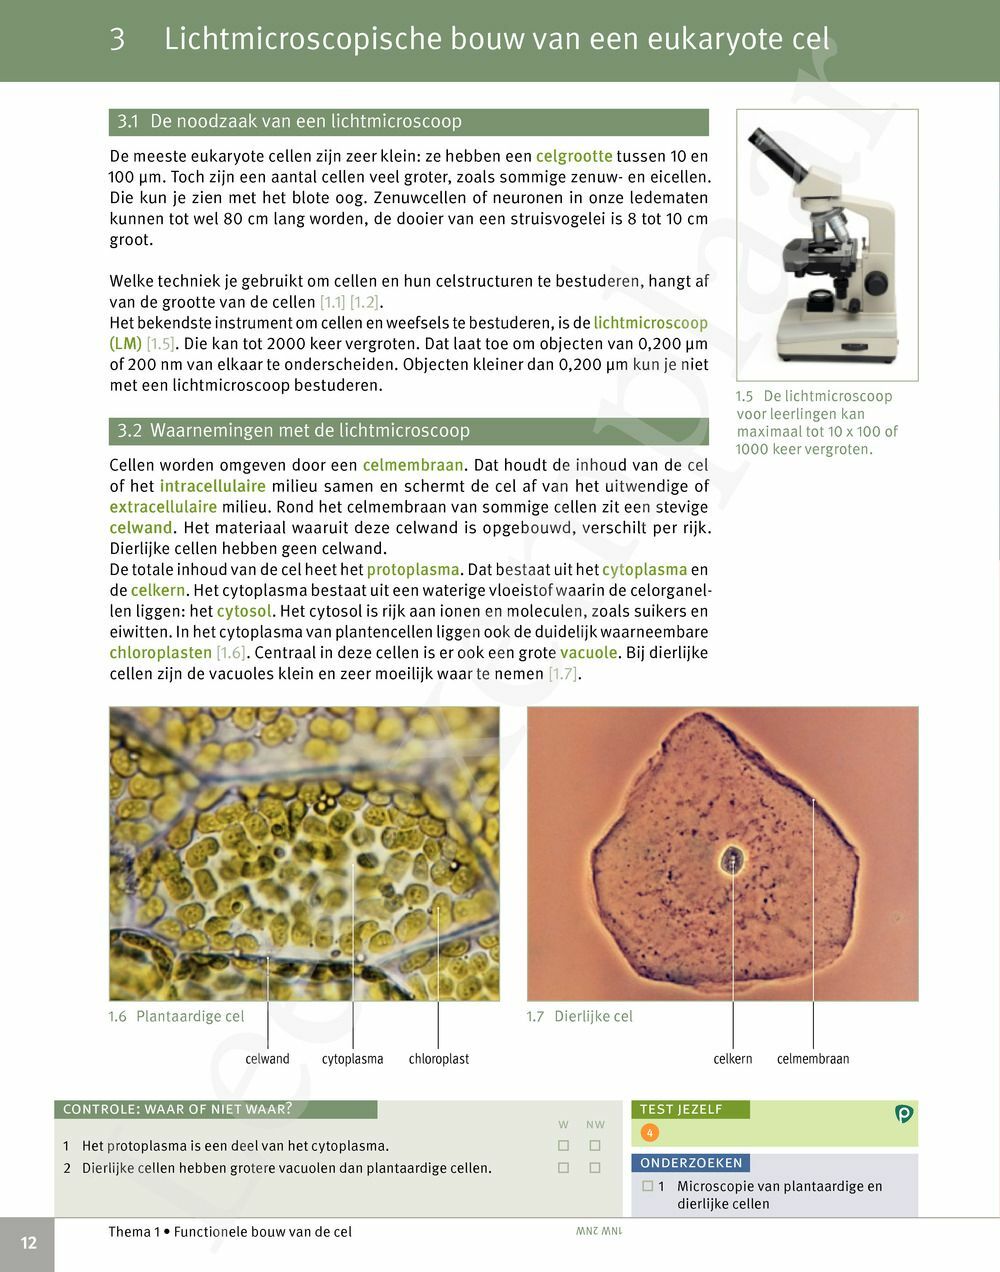 Preview: Focus Biologie 5 Cel en celprocessen Handboek (incl. Pelckmans Portaal)